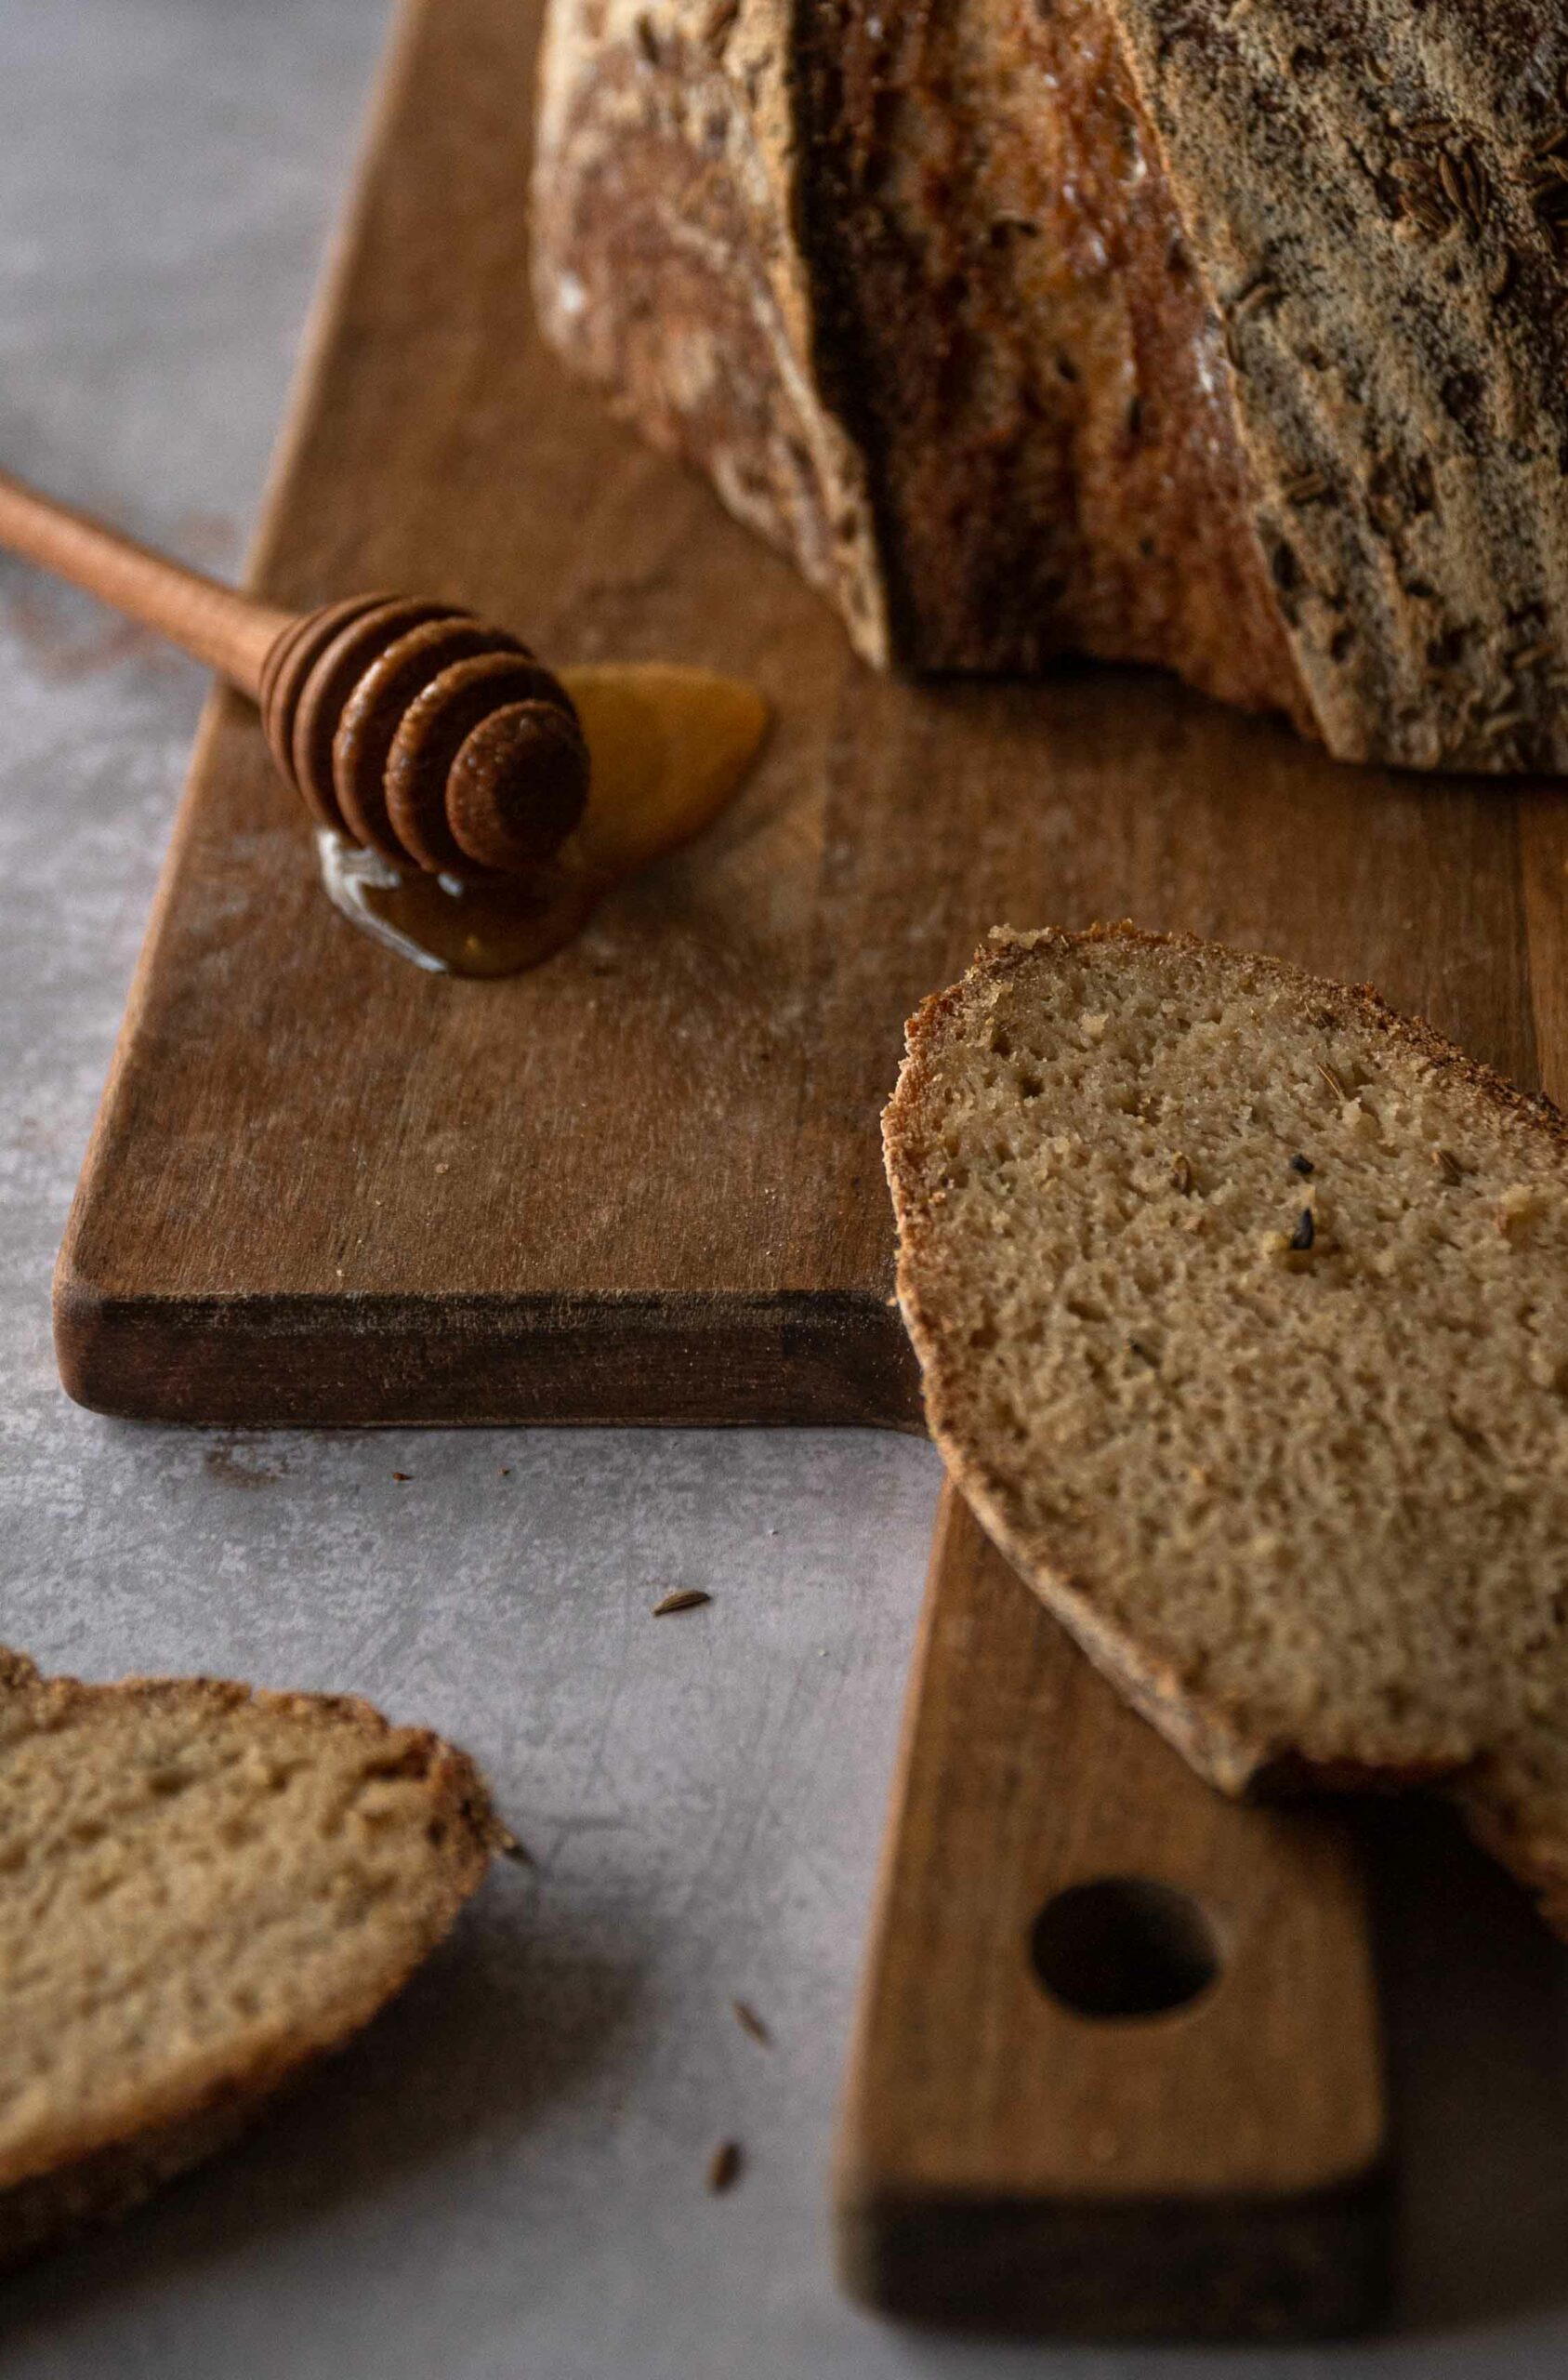 glutenfreies Brot mit Kümmel und Honig